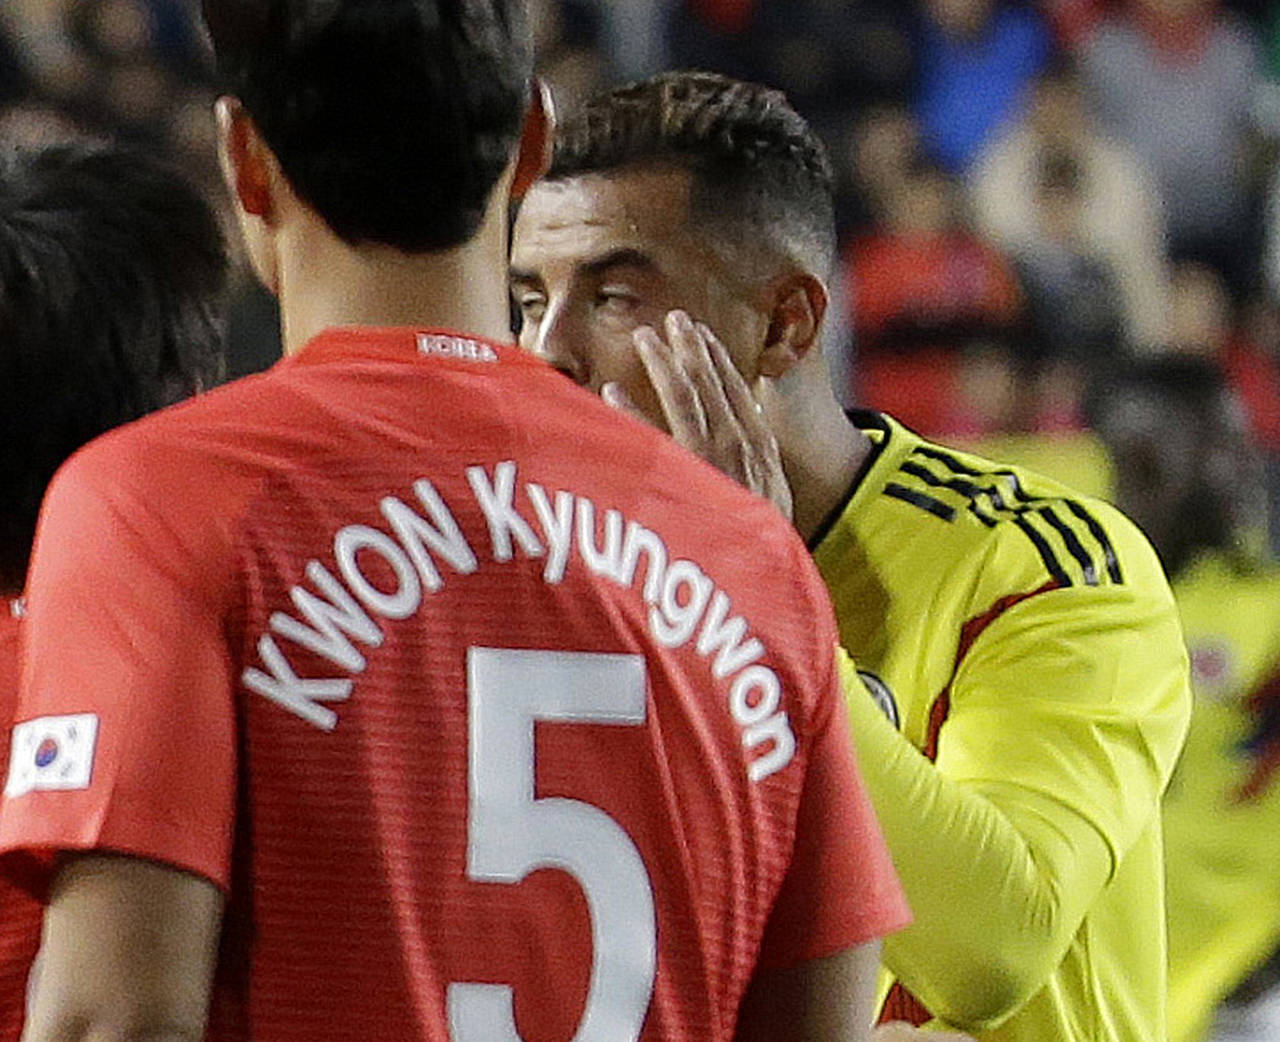 Edwin Cardona realiza un gesto racista con los ojos en un partido amistoso contra Corea del Sur en Seúl. Por gesto racista, castigan a Cardona